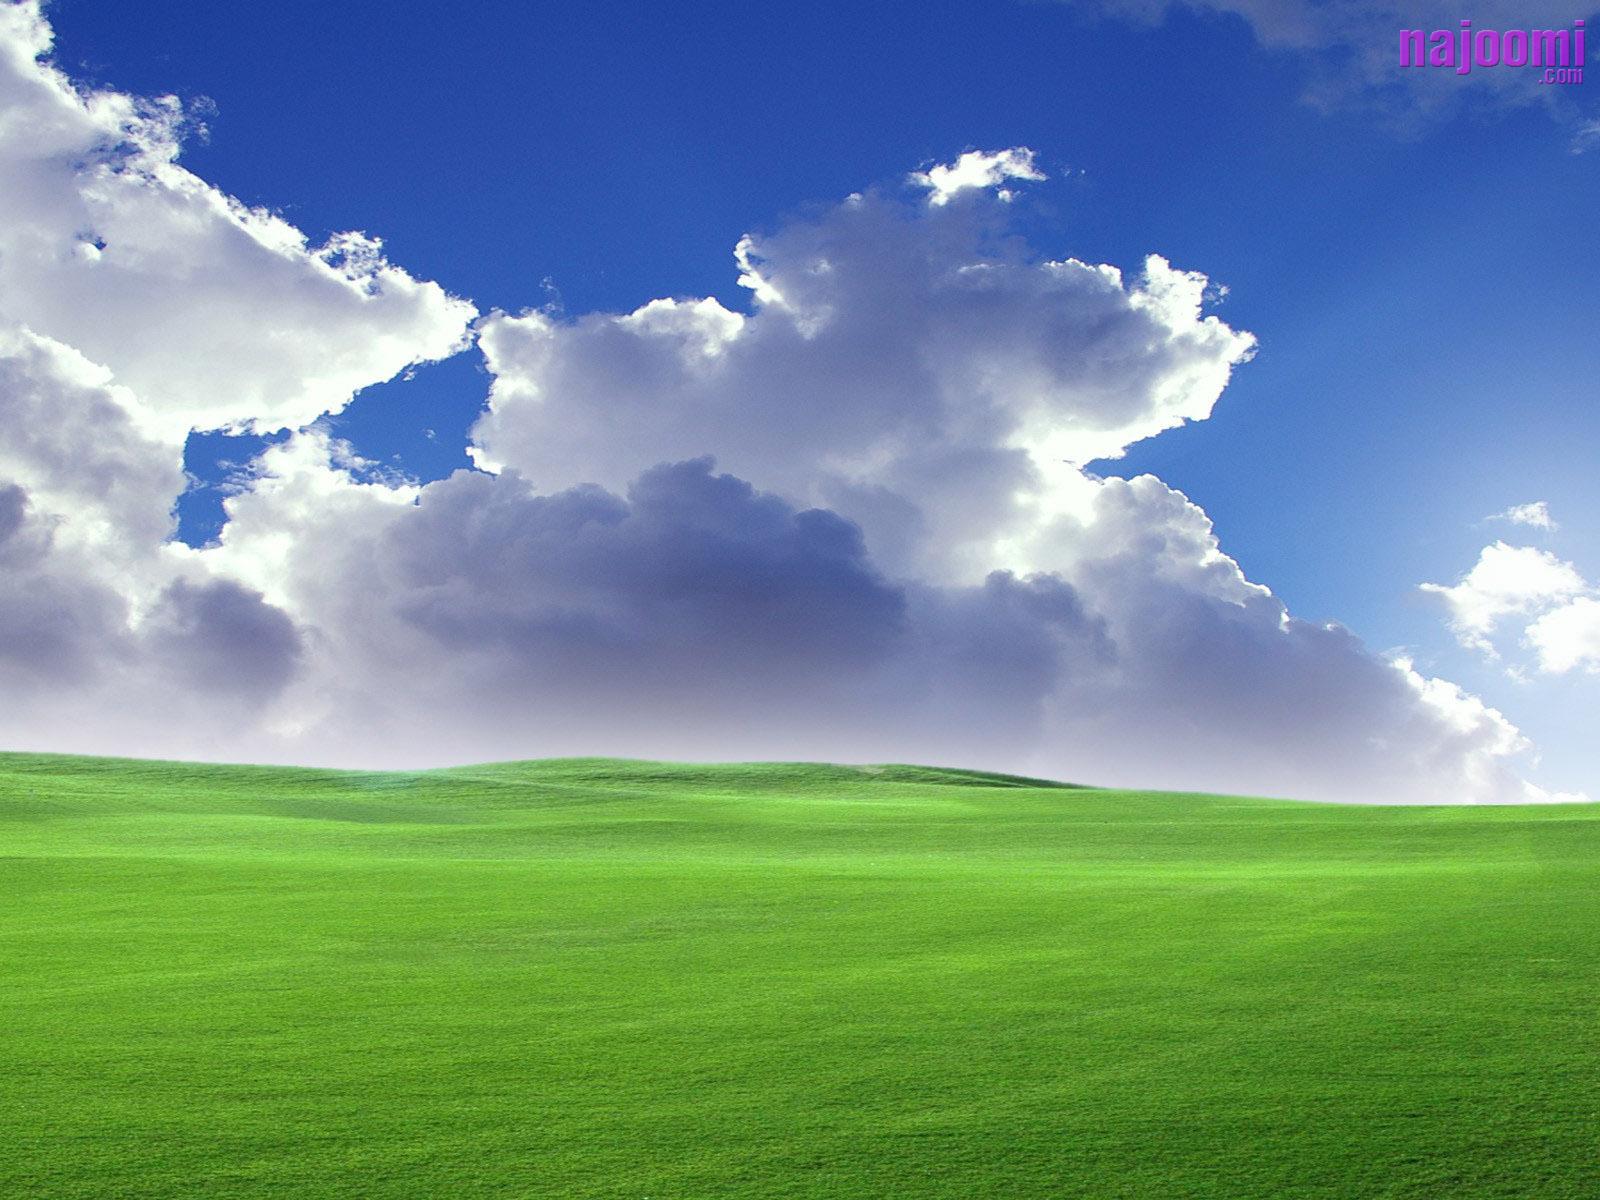 Hình nền Windows XP 3D miễn phí sẽ khiến bạn sốt sắng với nhiều chủ đề độc đáo từ tự nhiên, động vật đến những hình ảnh vui nhộn. Bạn có thể dễ dàng tải chúng về và thay đổi hình nền desktop theo sở thích của mình.